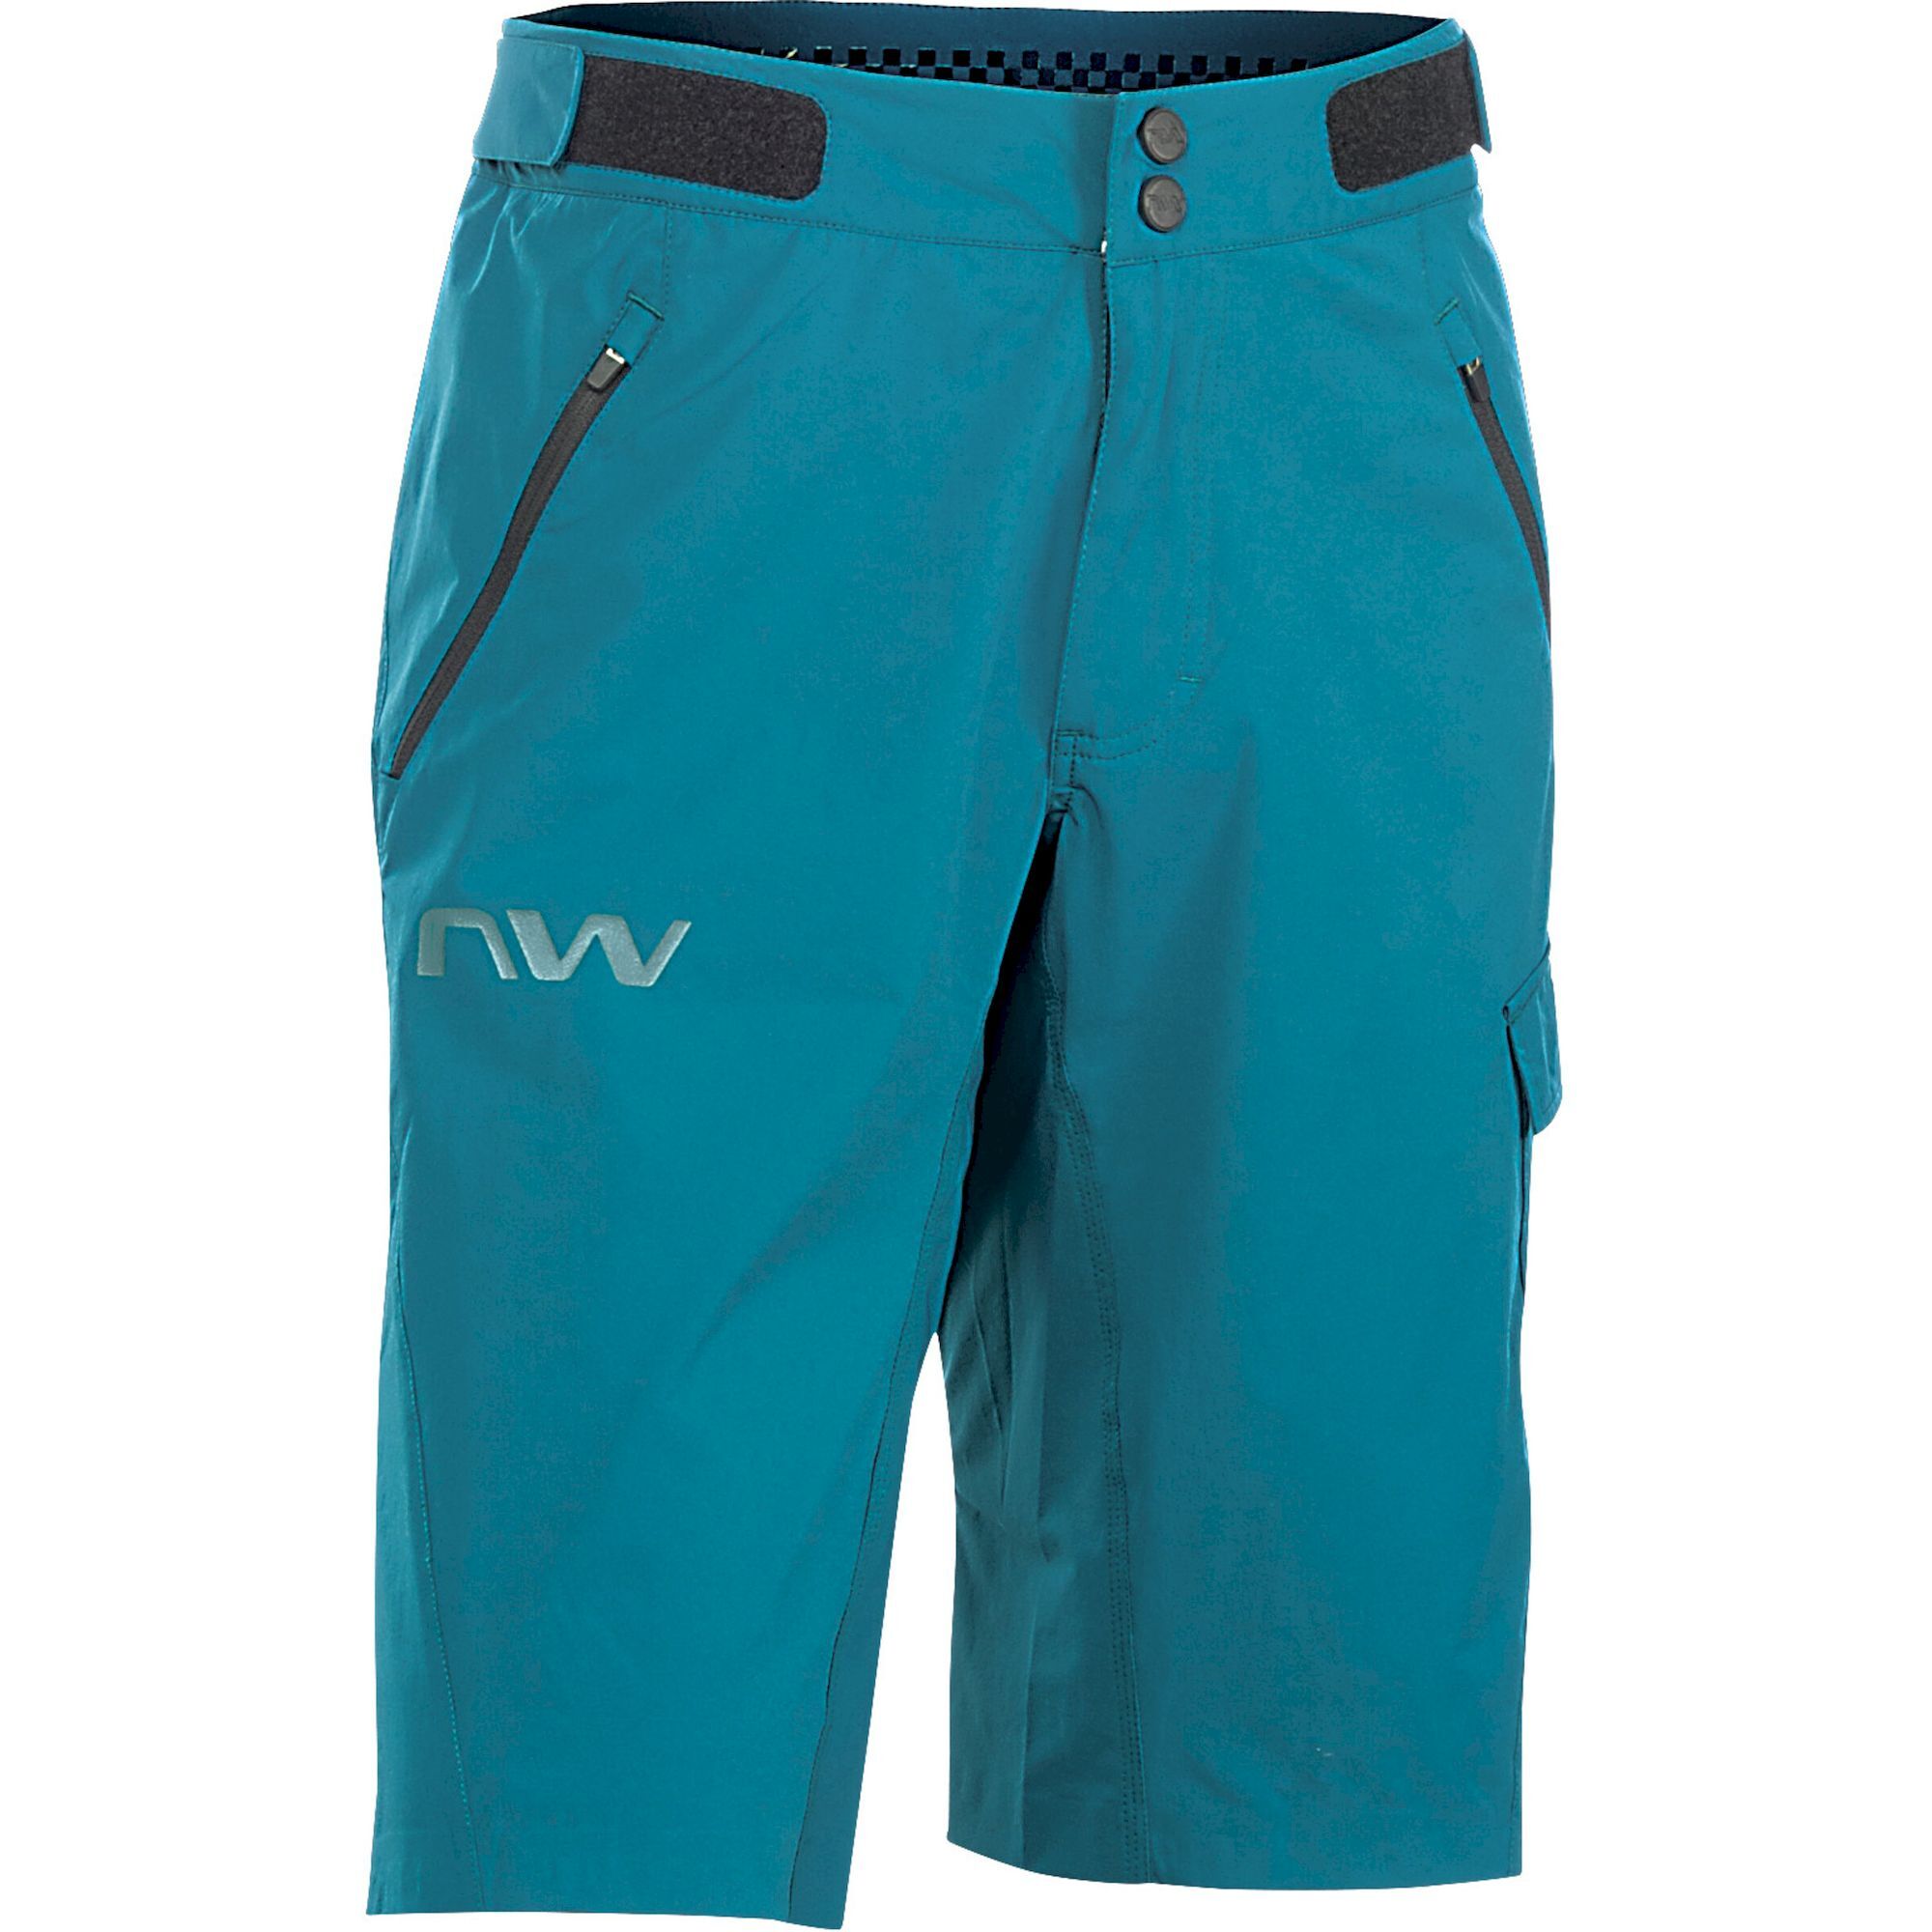 Northwave Edge Baggy - Pantalones cortos MTB - Hombre